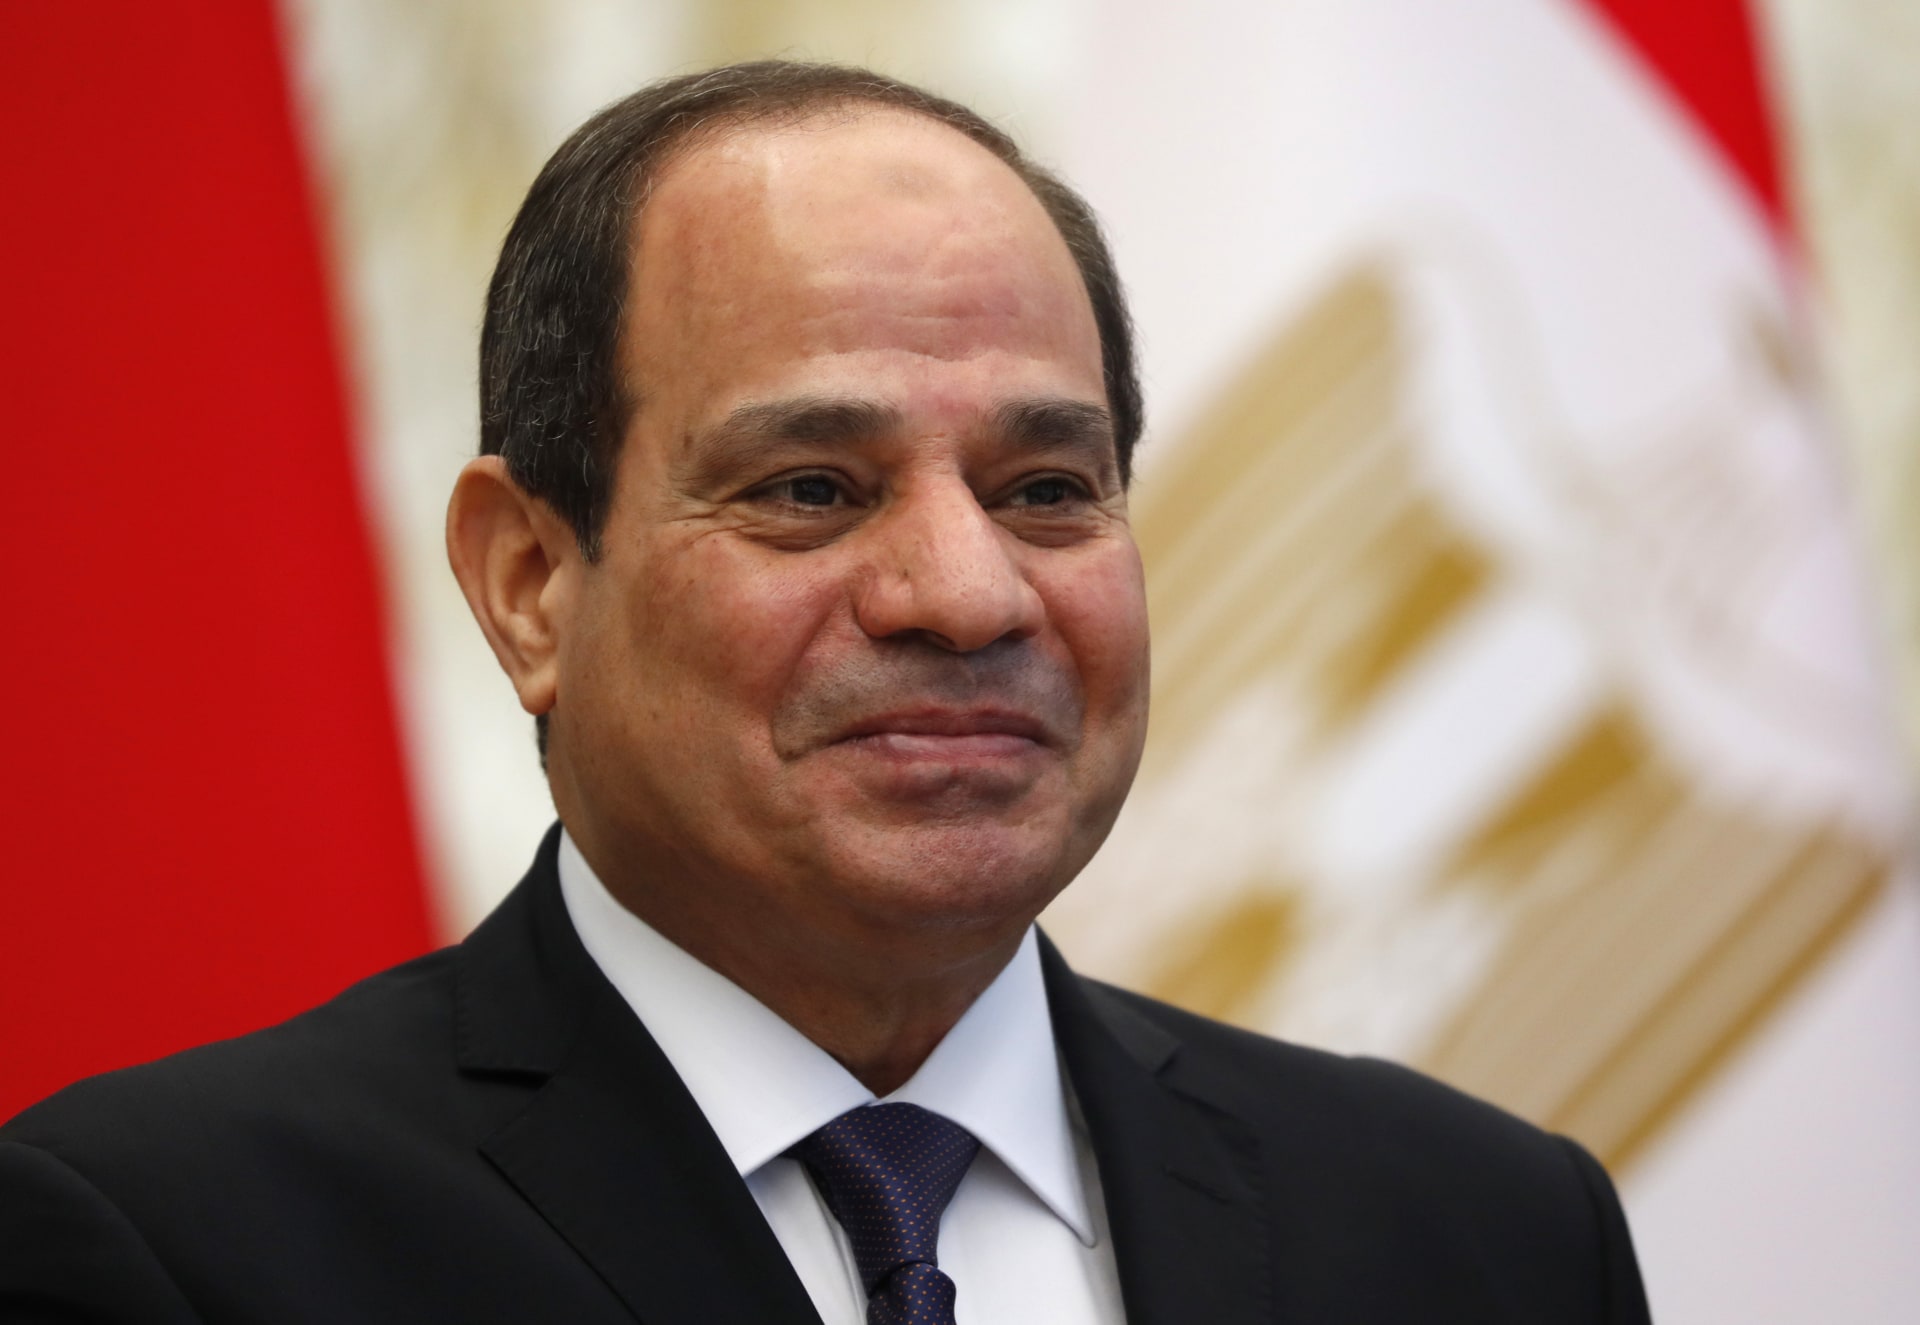 1 السيسي: مصر تحرص على استمرار تعزيز دورها القومي لدعم مسيرة العمل العربي المشترك